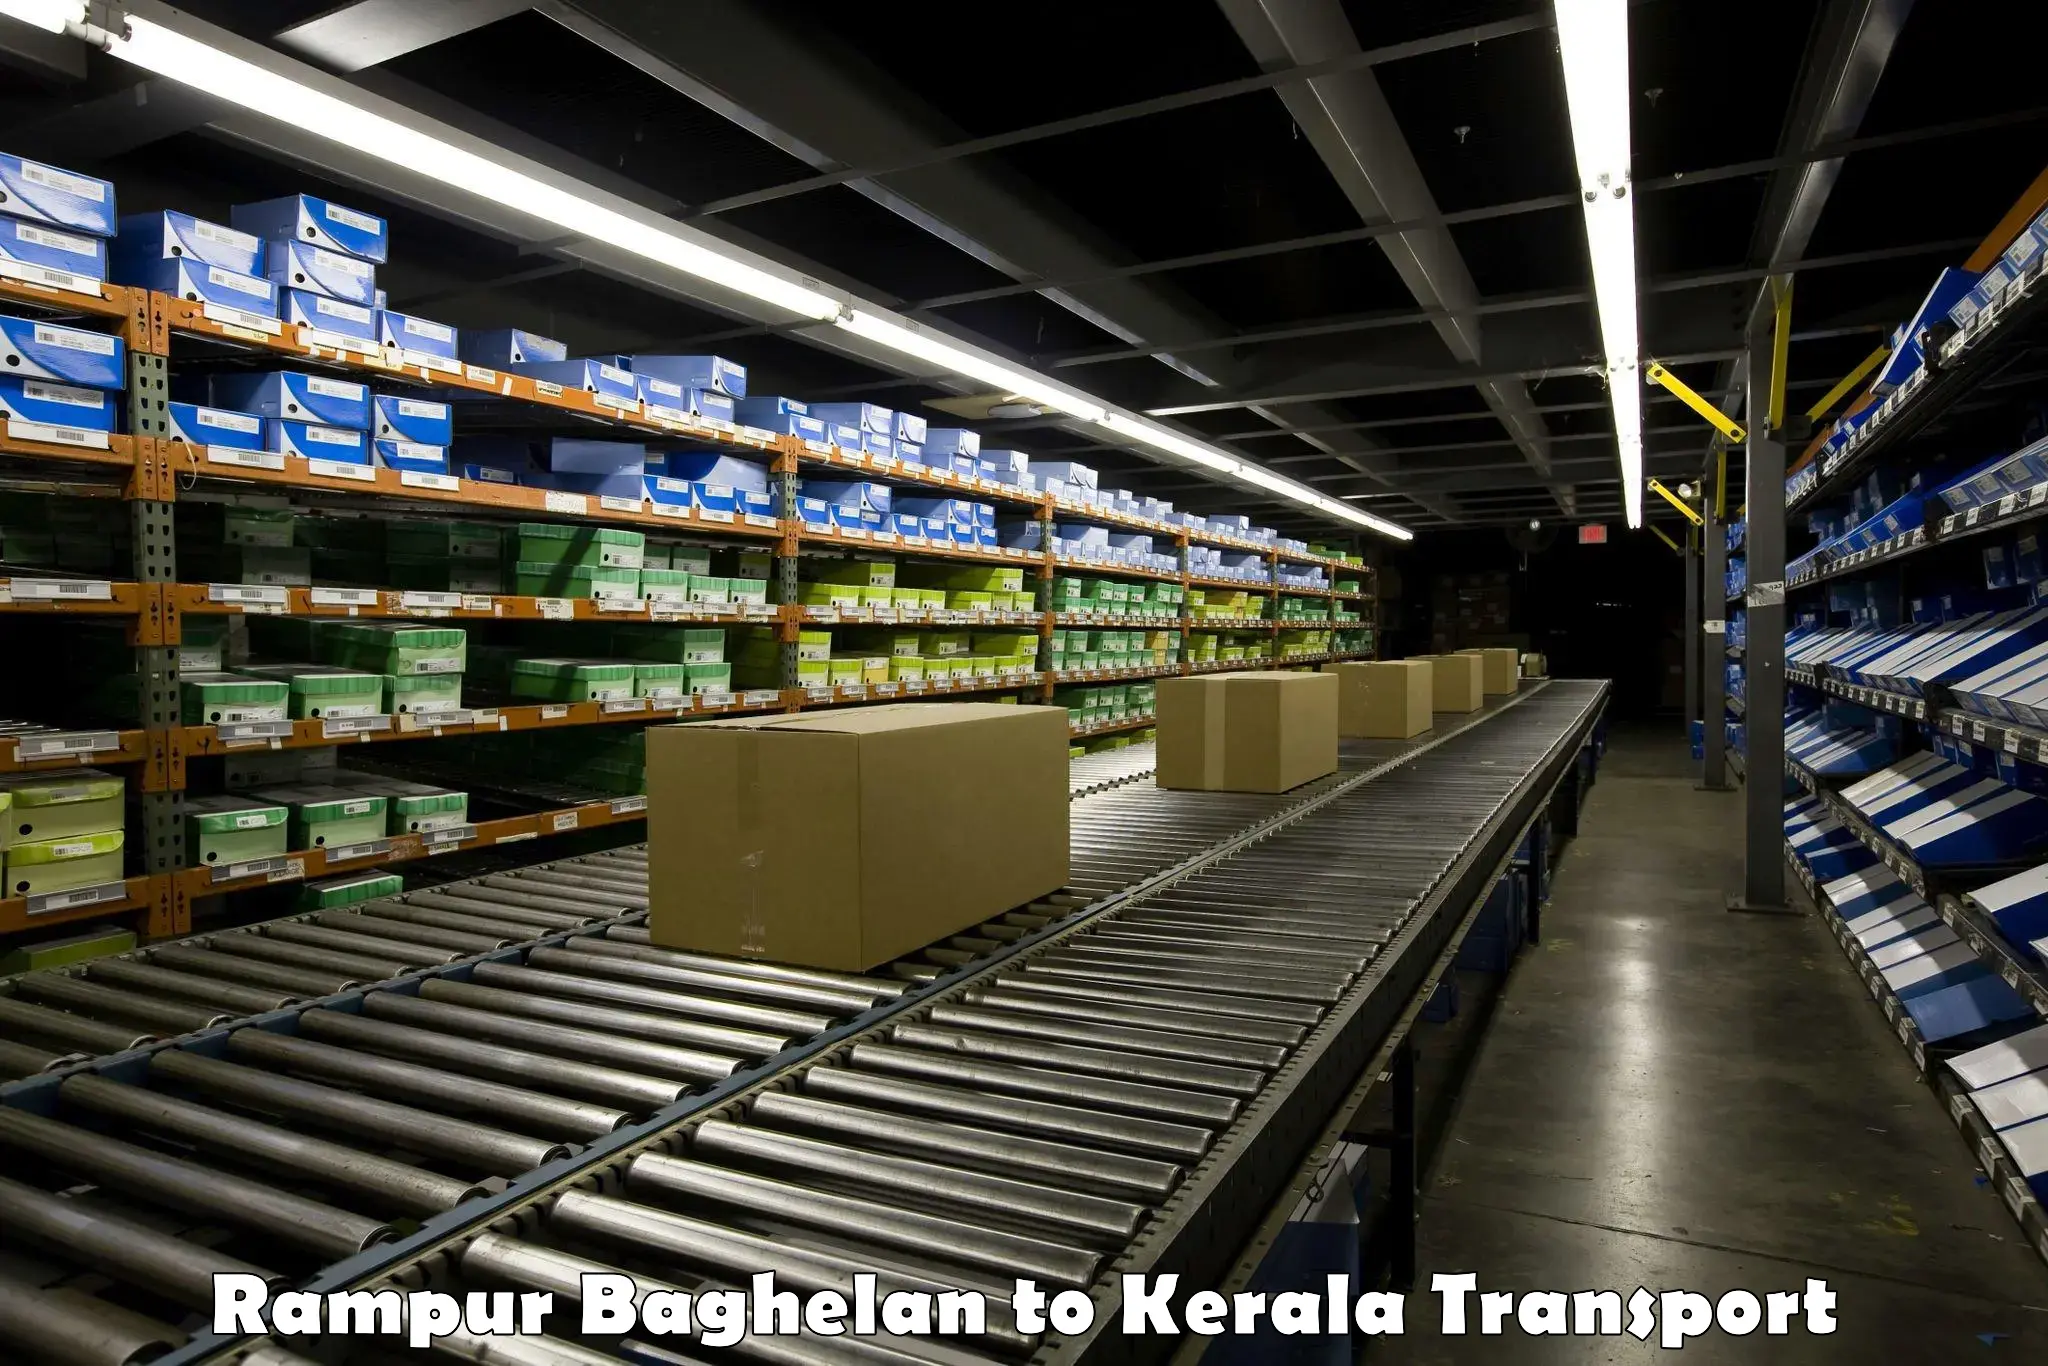 Lorry transport service Rampur Baghelan to Kochi